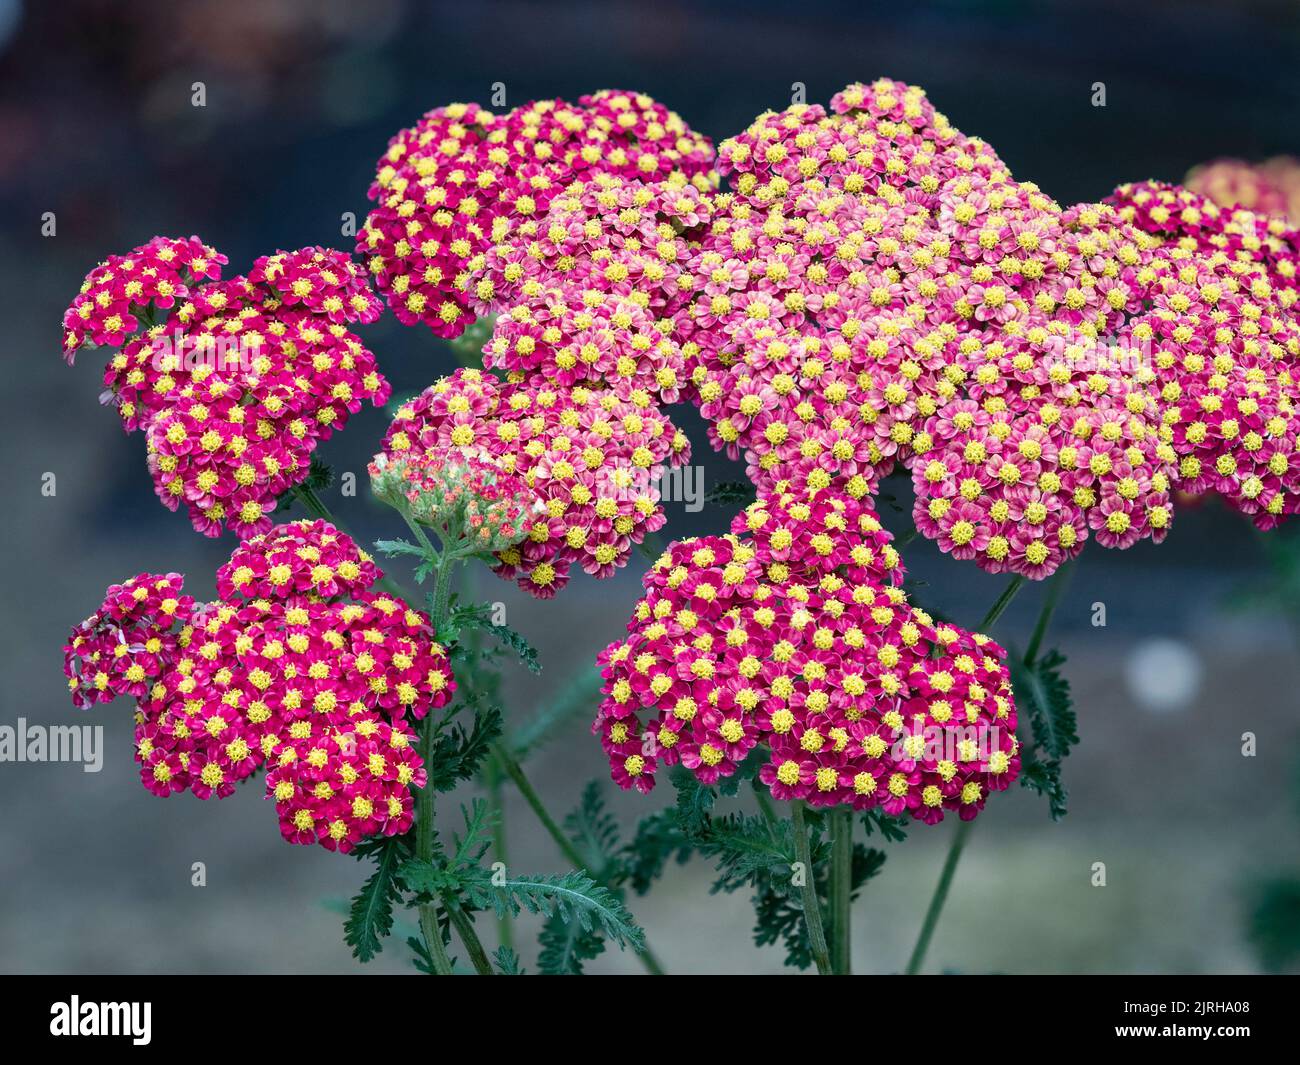 Testa di fiore a forma di cupola con fiori estivi rossi centrati dorati del perenne compatto e duro, Achillea millefolium 'Strawberry Seduction' Foto Stock